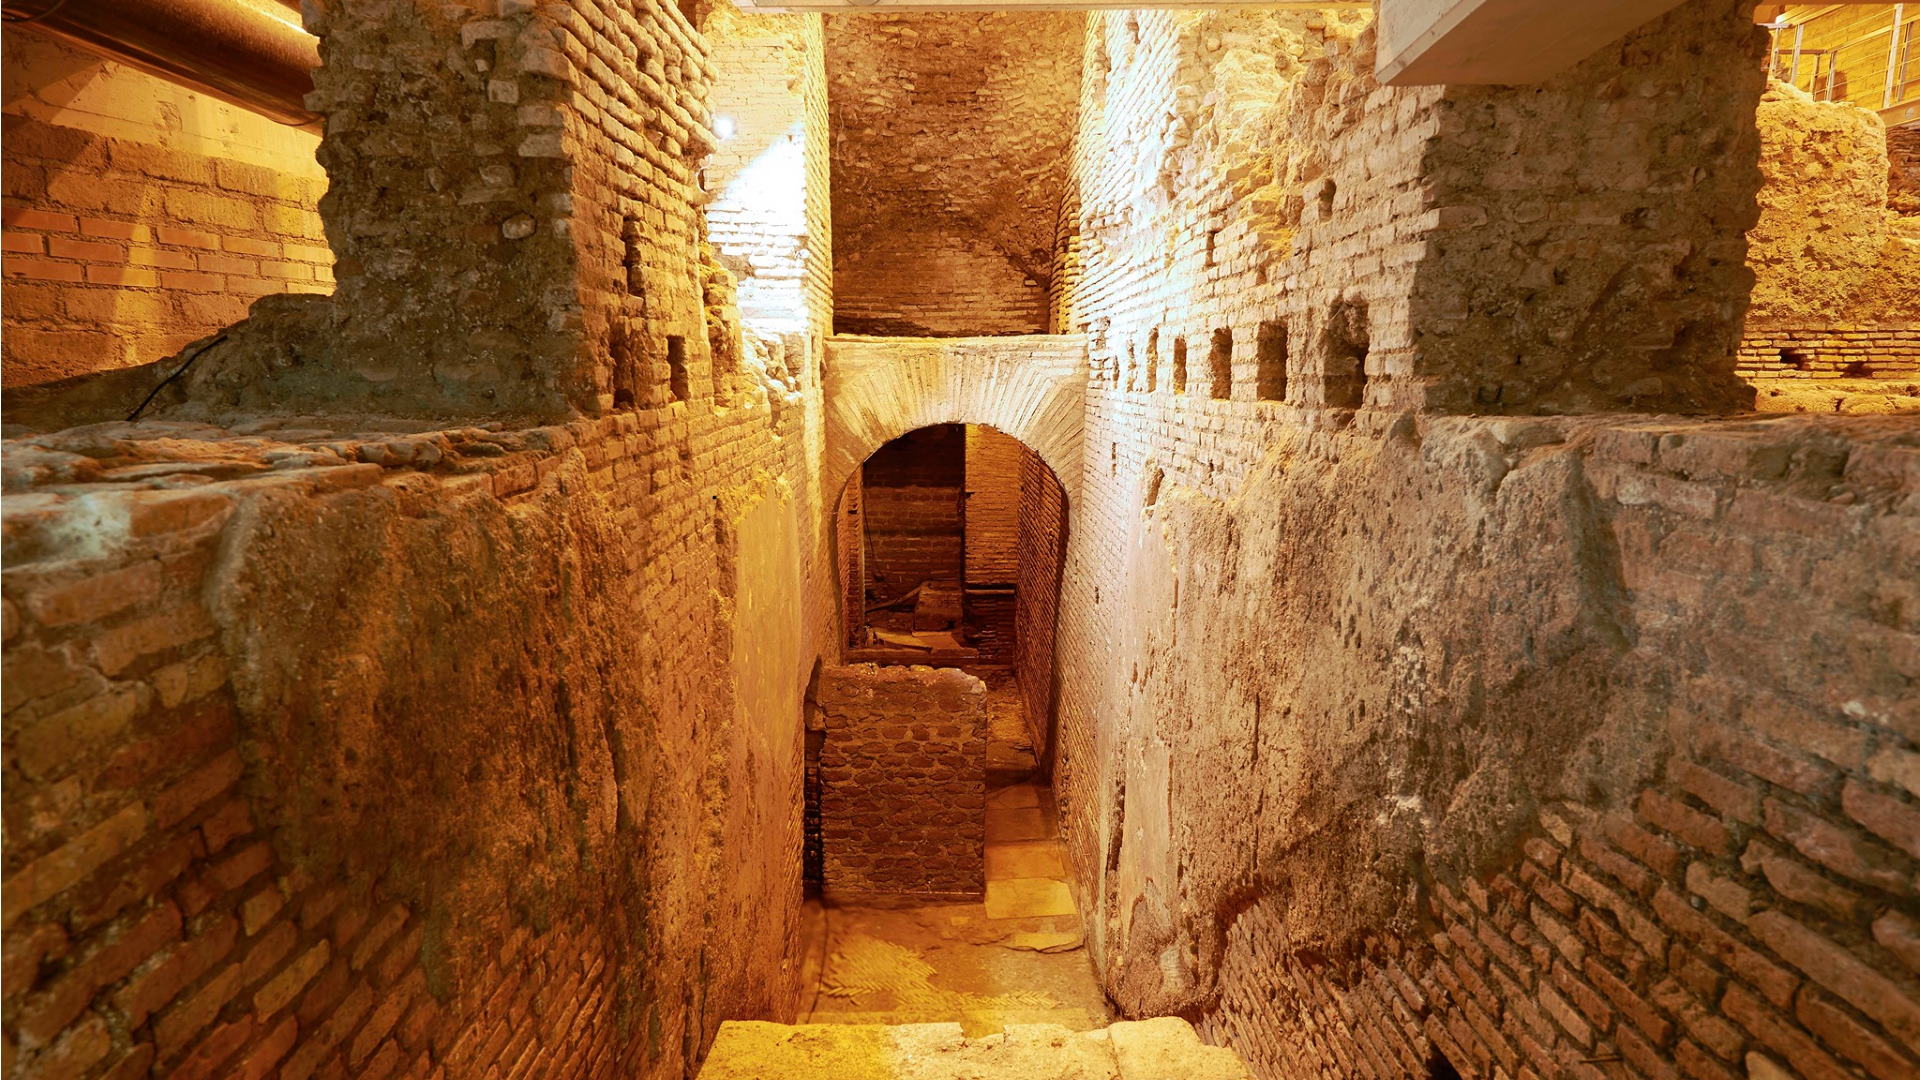 Foto profilo Facebook Area Archeologica del Vicus Caprarius - la Città dell'Acqua